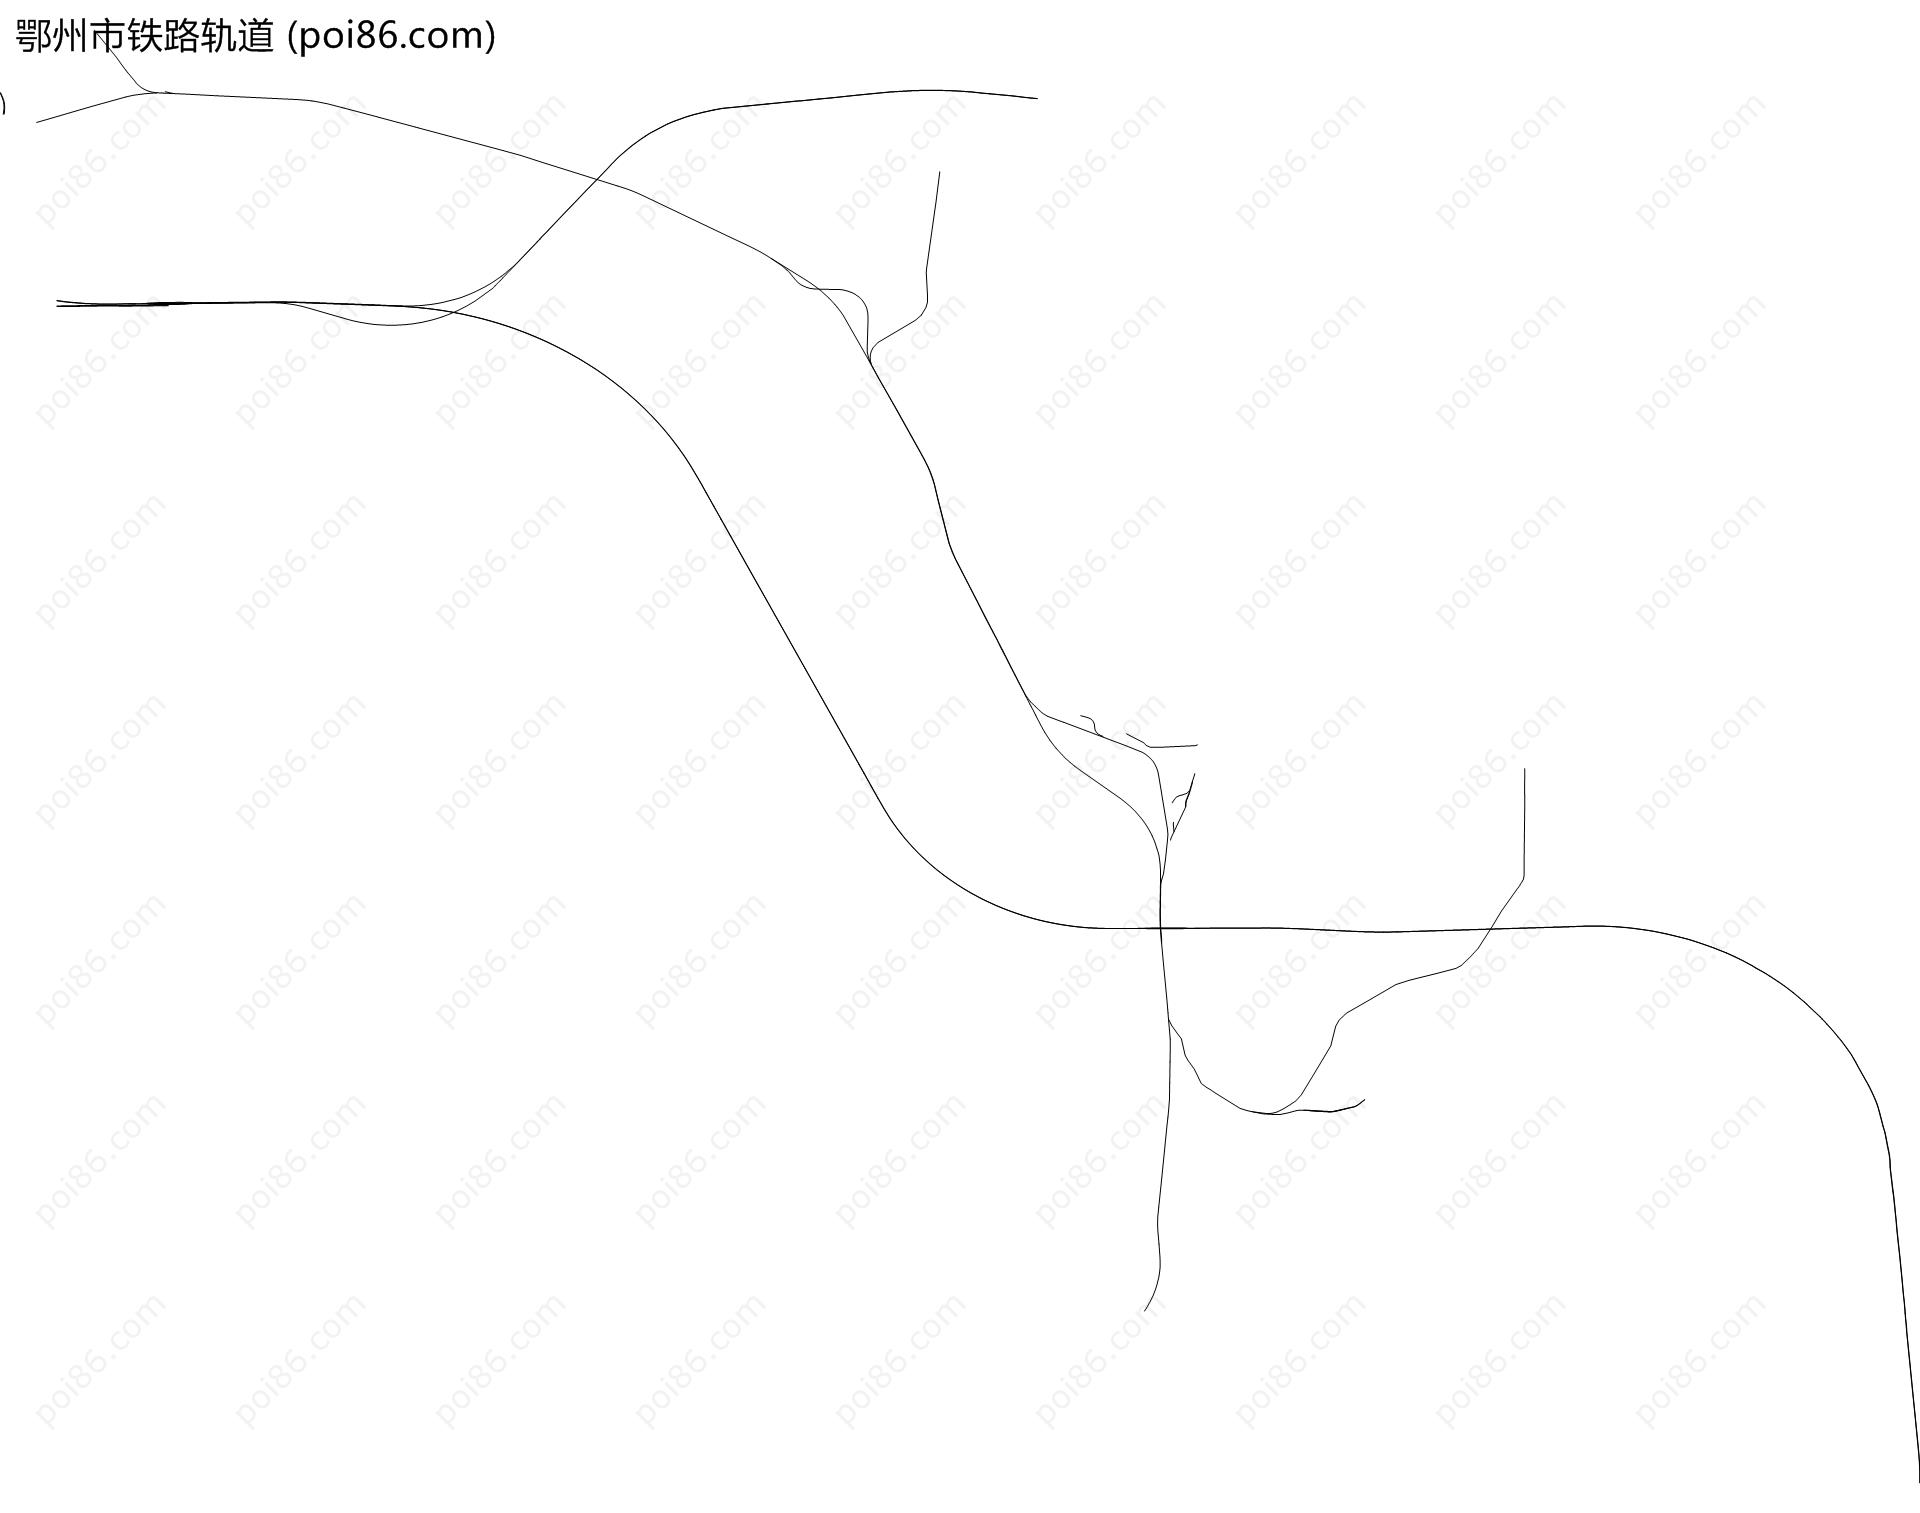 鄂州市铁路轨道地图